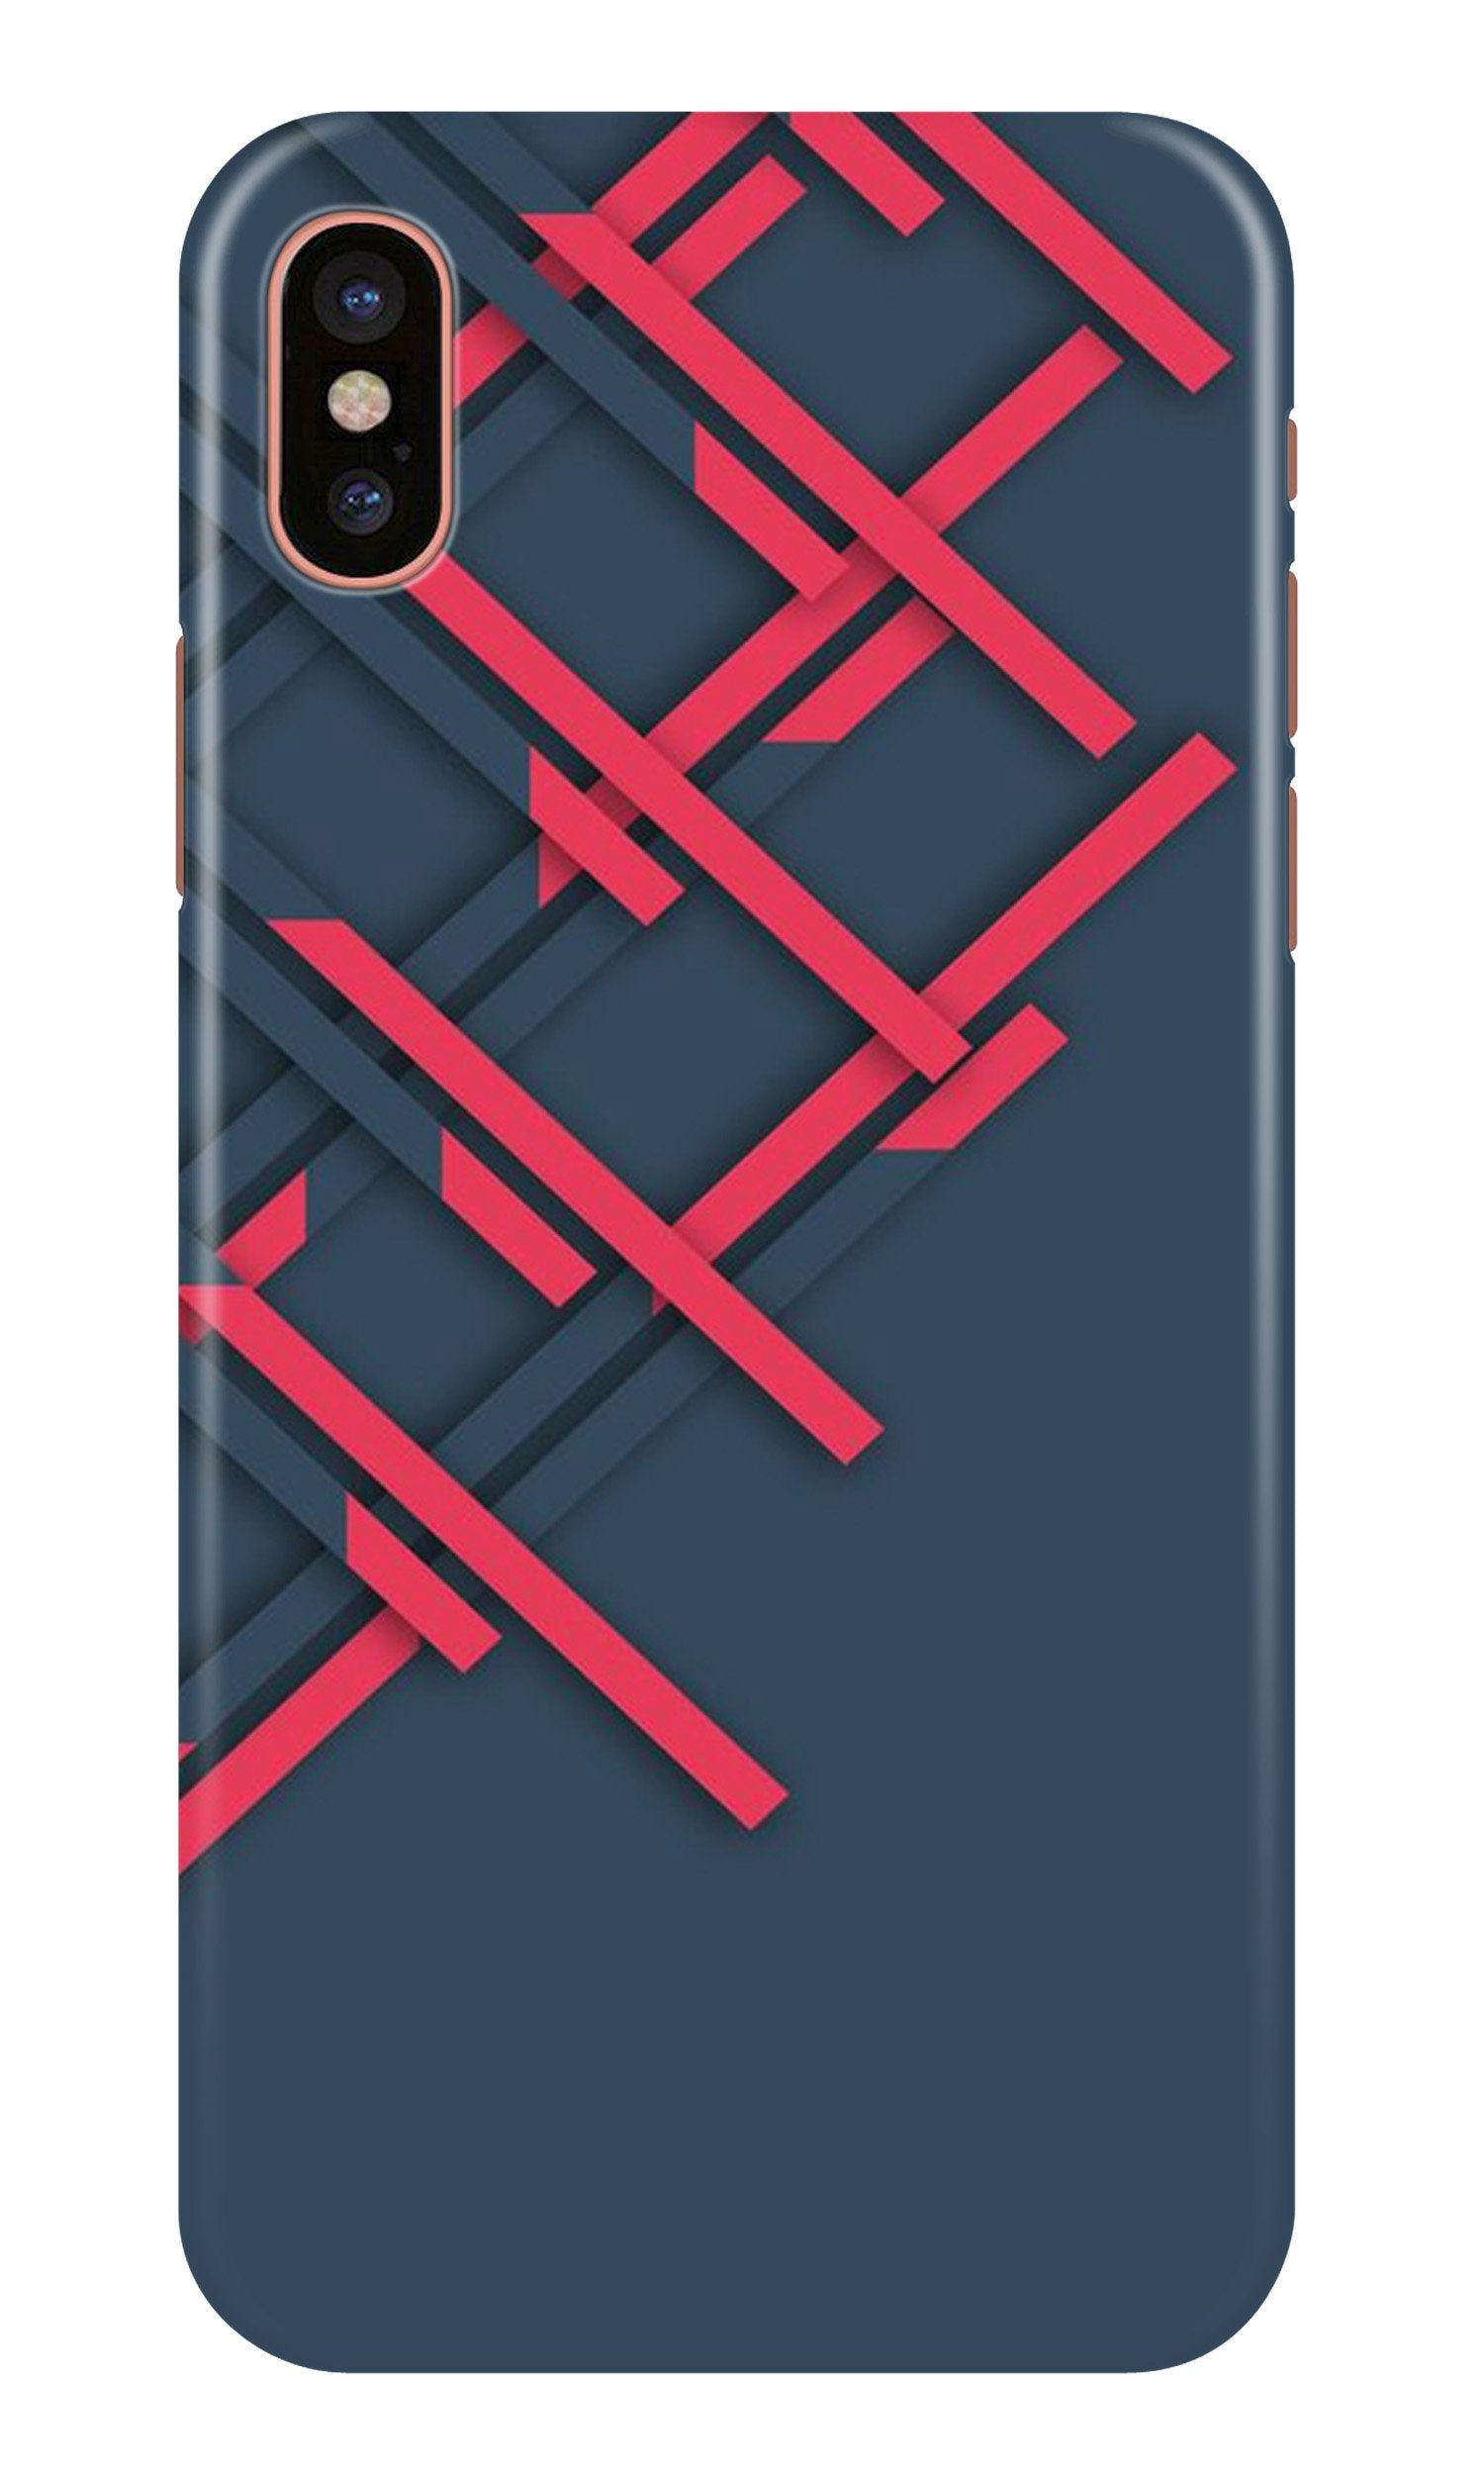 Designer Case for iPhone Xr (Design No. 285)